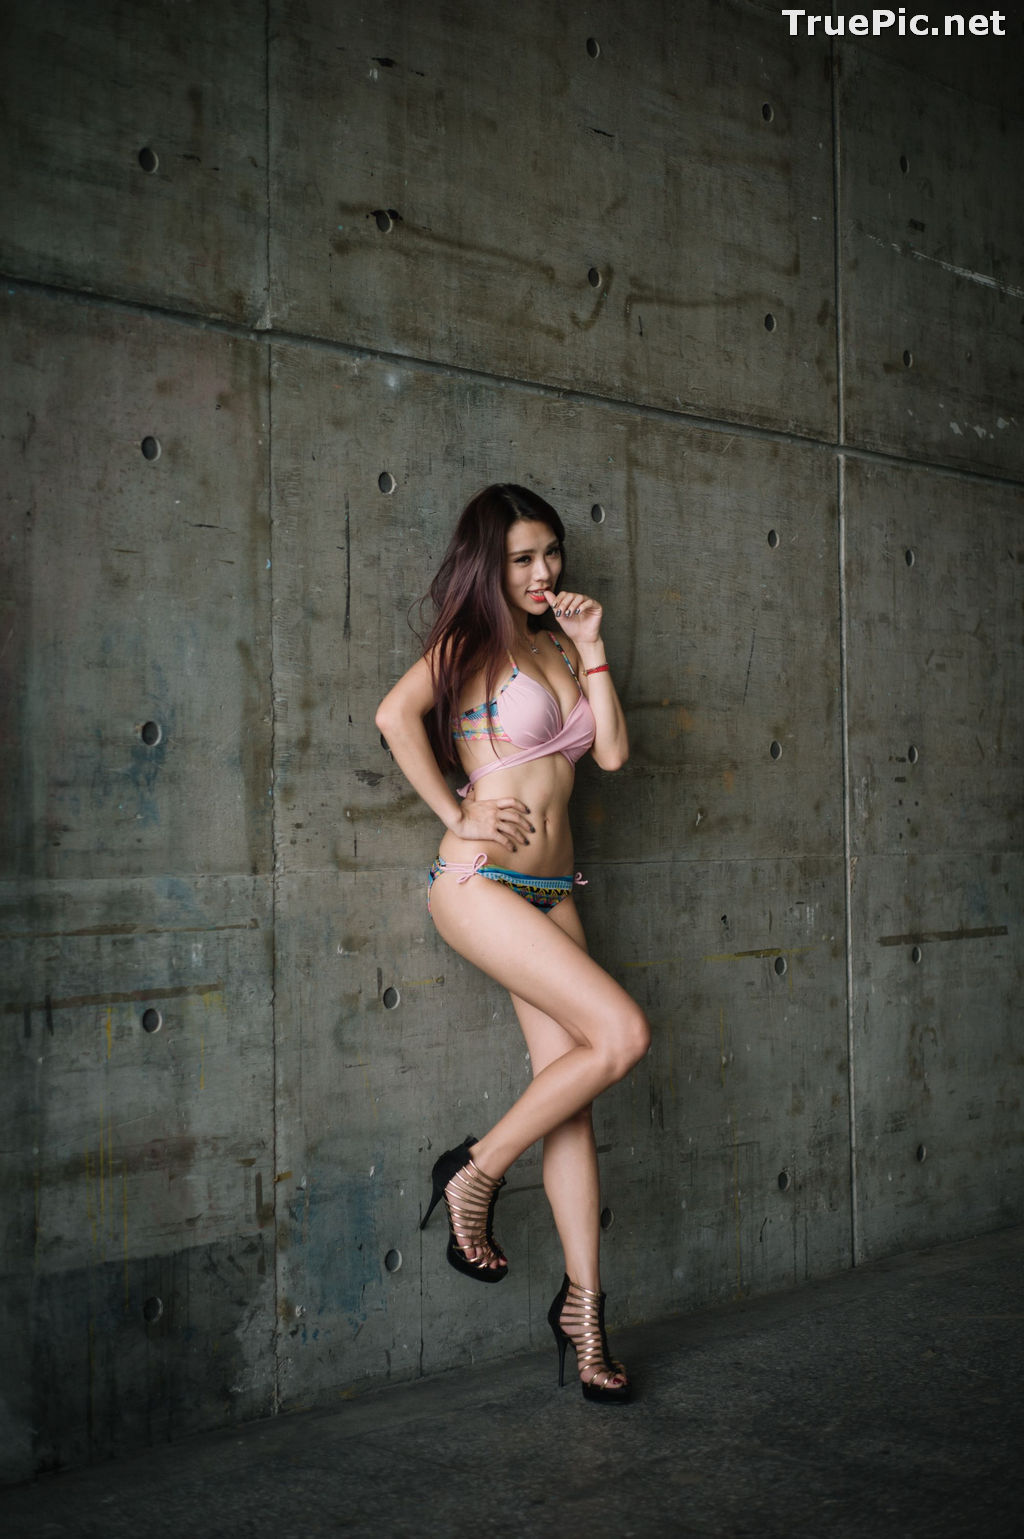 Image Taiwanese Model - 魏曼曼 (Amanda) - Bikini In The Room - TruePic.net - Picture-68